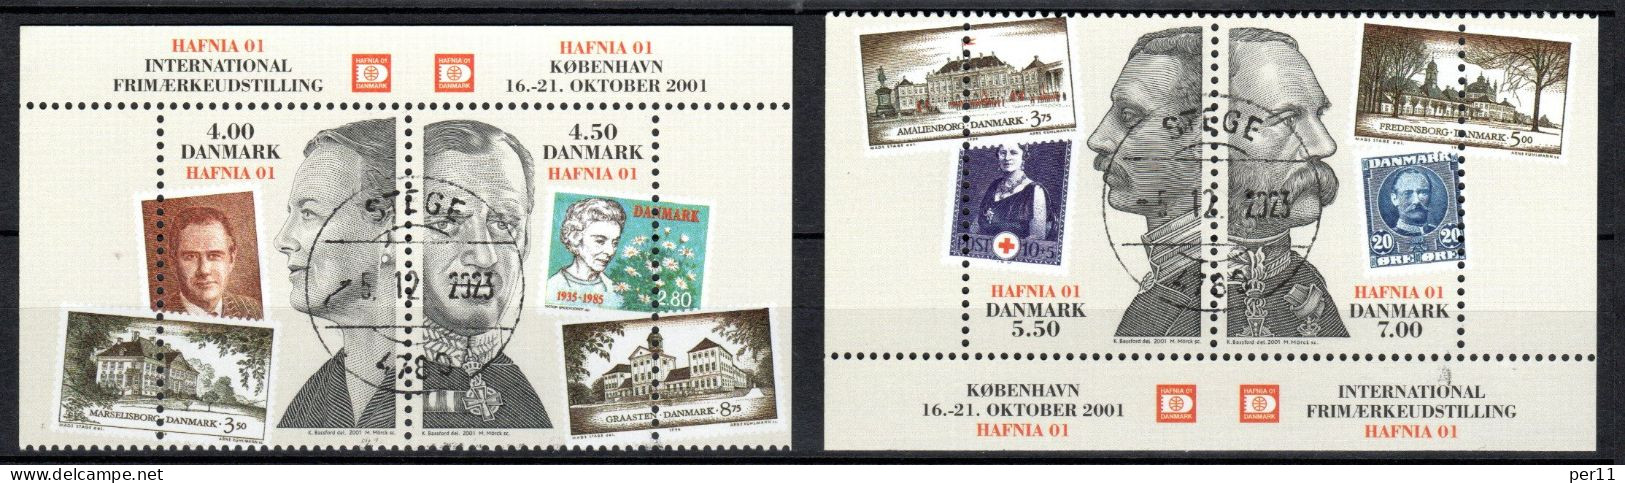 2001 Hafnia01 Stamp Excibition  (bl10) - Gebraucht